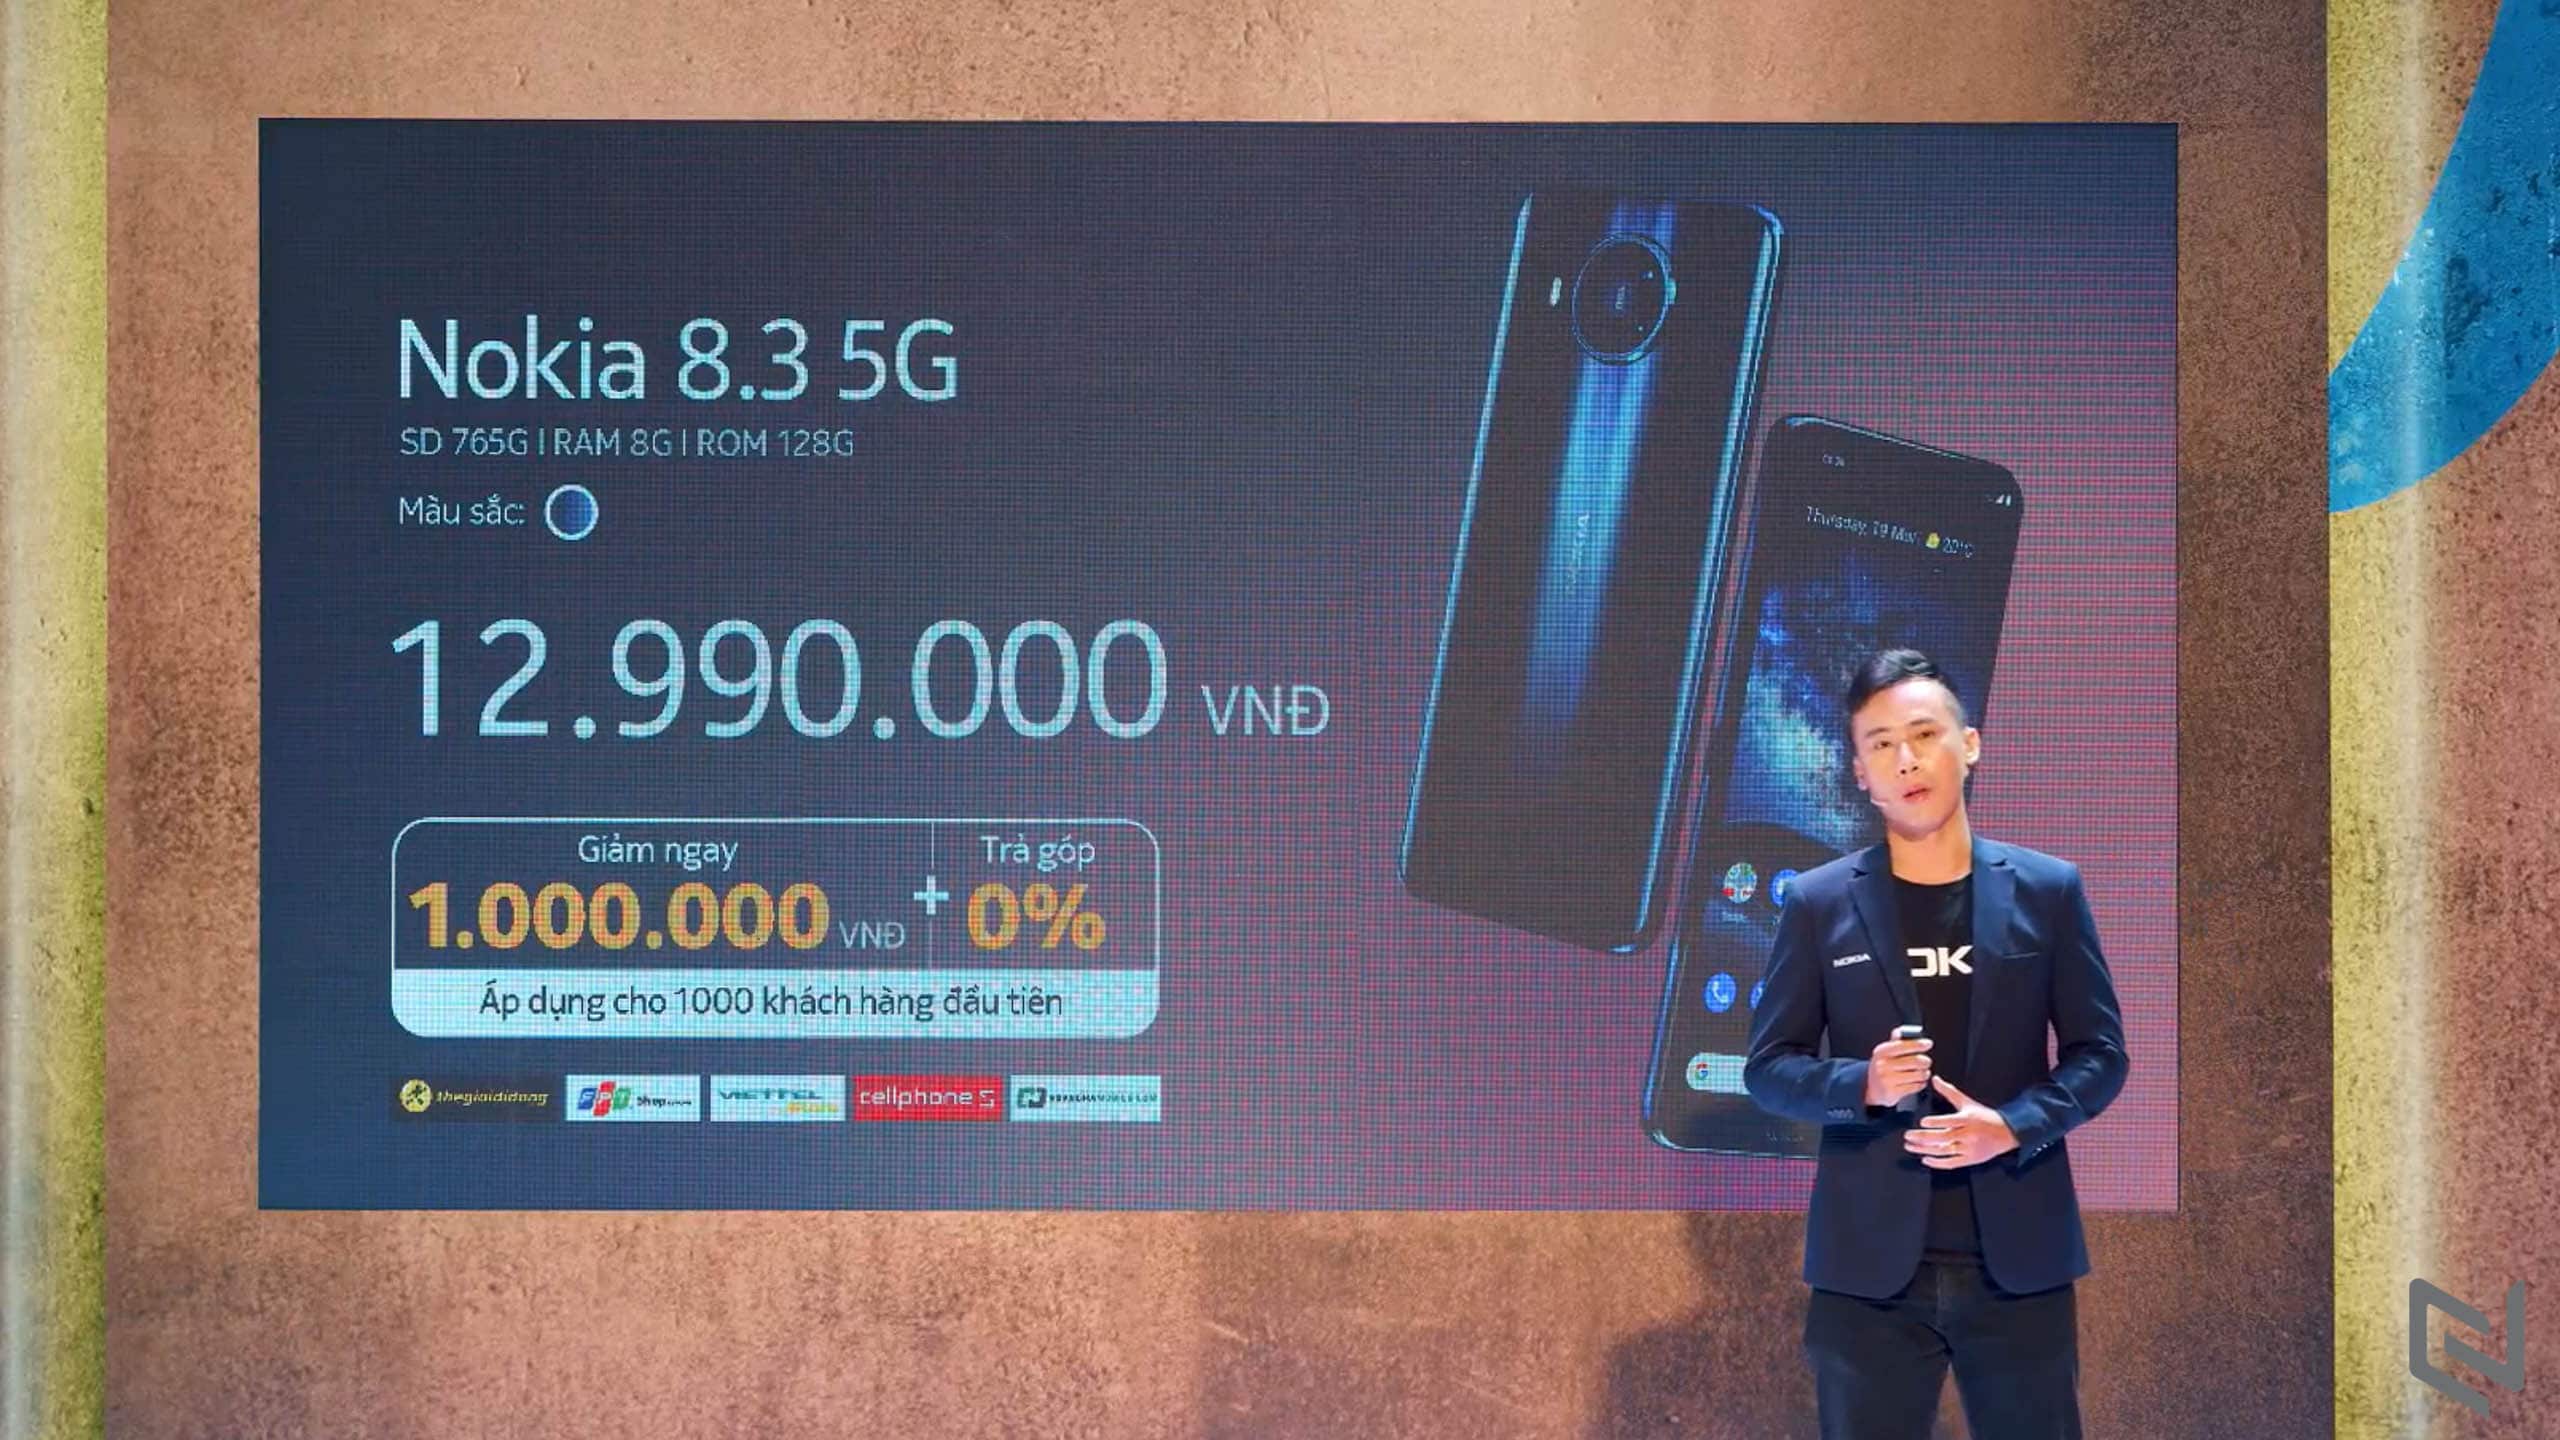 HMD Global ra mắt 03 smartphone Nokia mới tại thị trường Việt Nam: Nokia 8.3 5G, Nokia 2.4 và Nokia 3.4